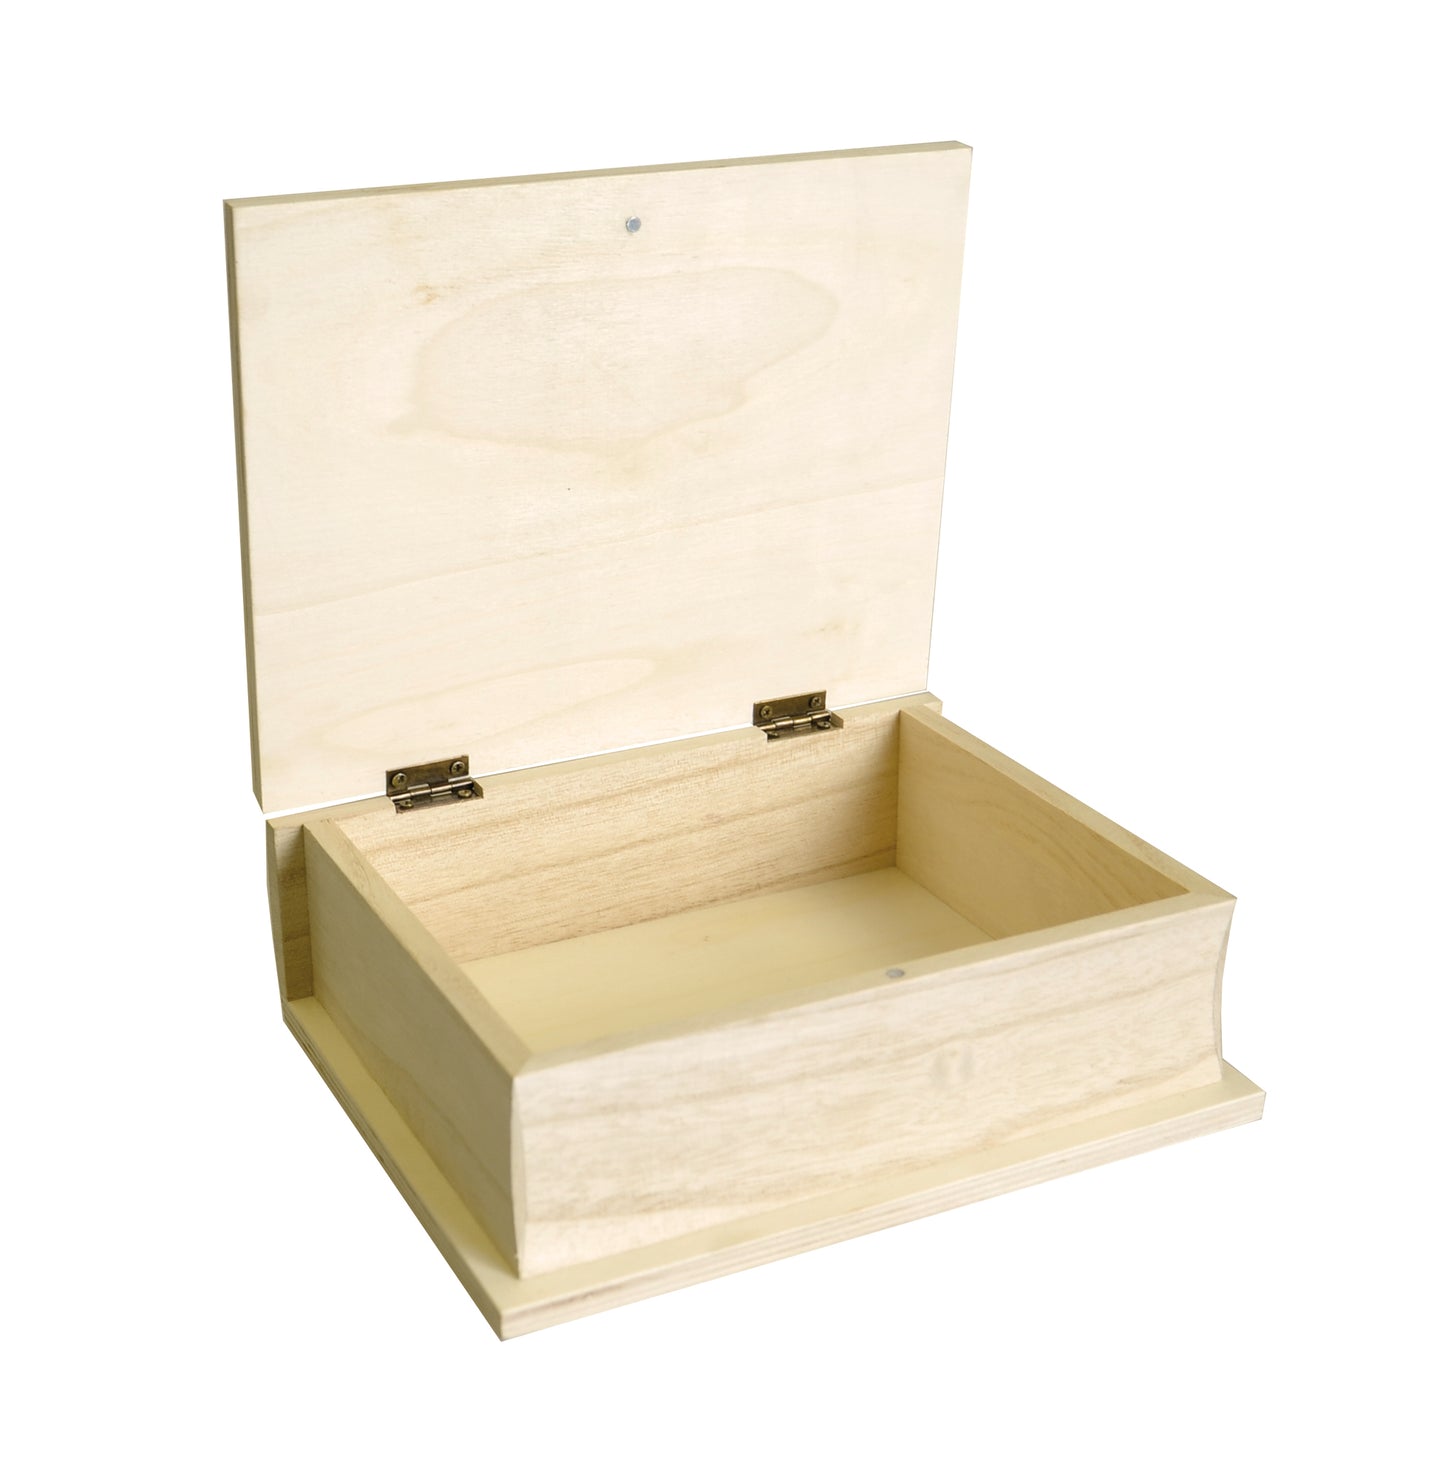 Artemio wooden box Code 14001643